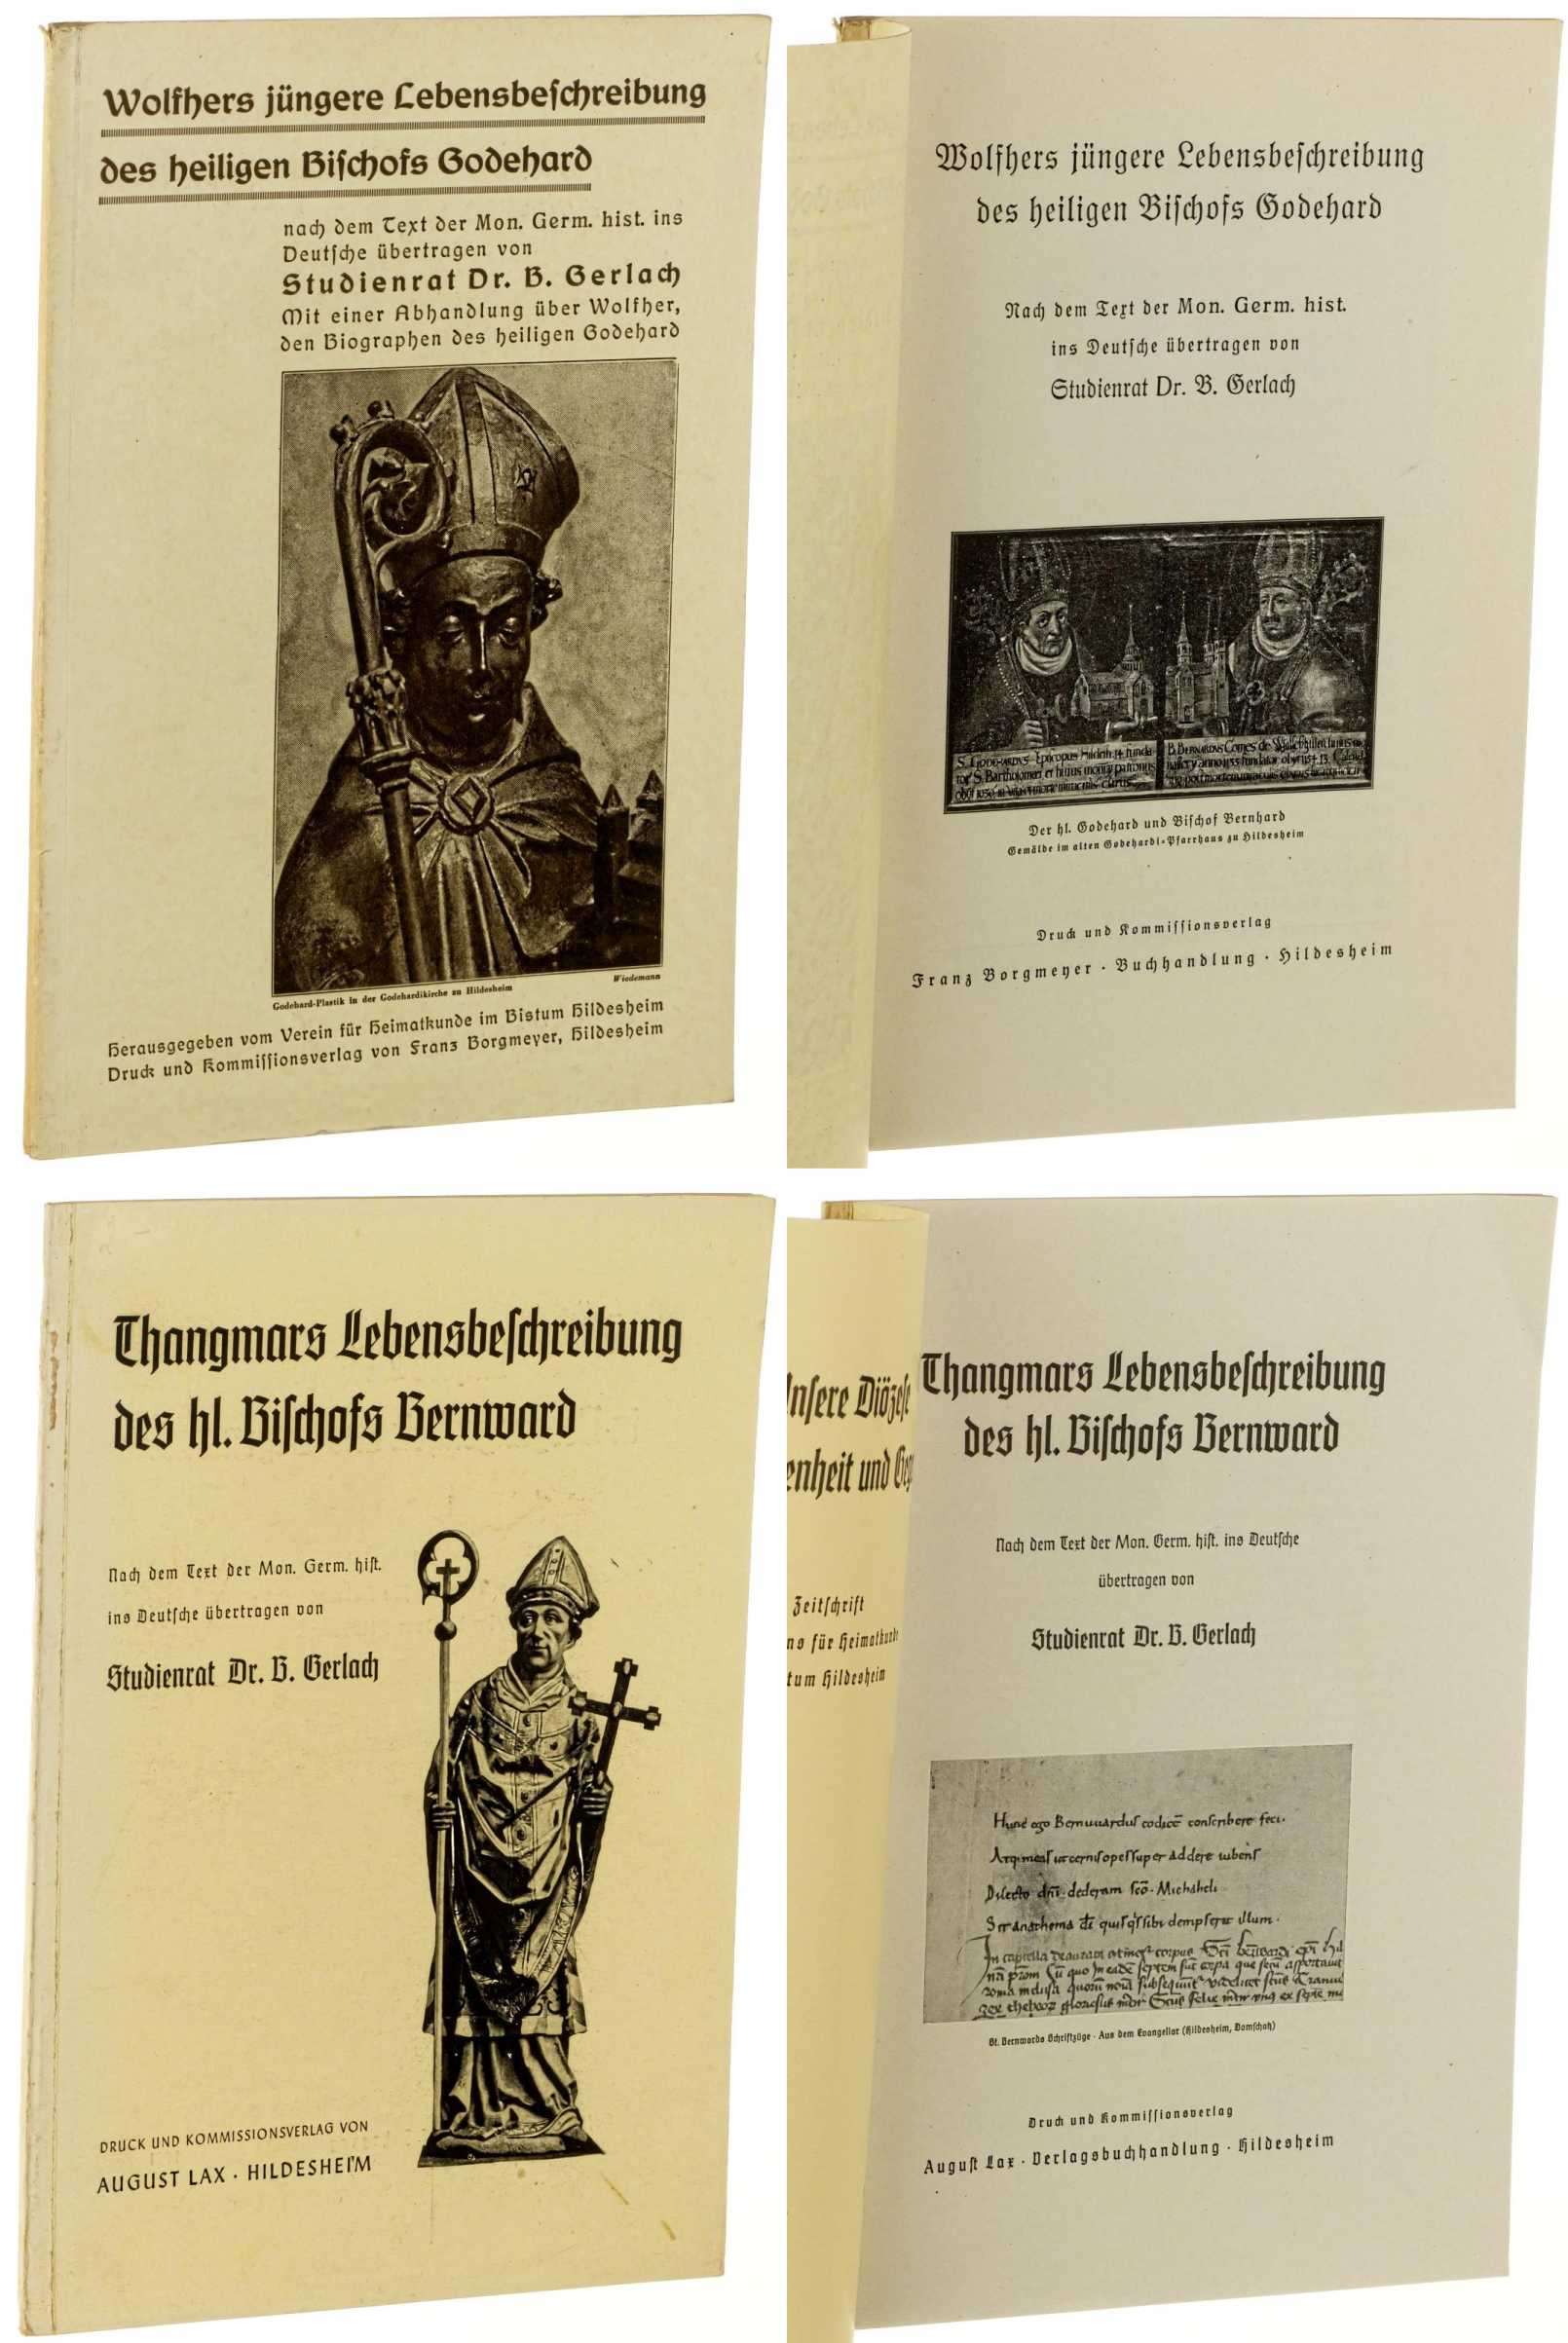 Gerlach, B.:  Wolfhers jüngere Lebensbeschreibung des heiligen Bischofs Godehard. Hrsg. vom Verein für Heimatkunde im Bistum Hildesheim. 